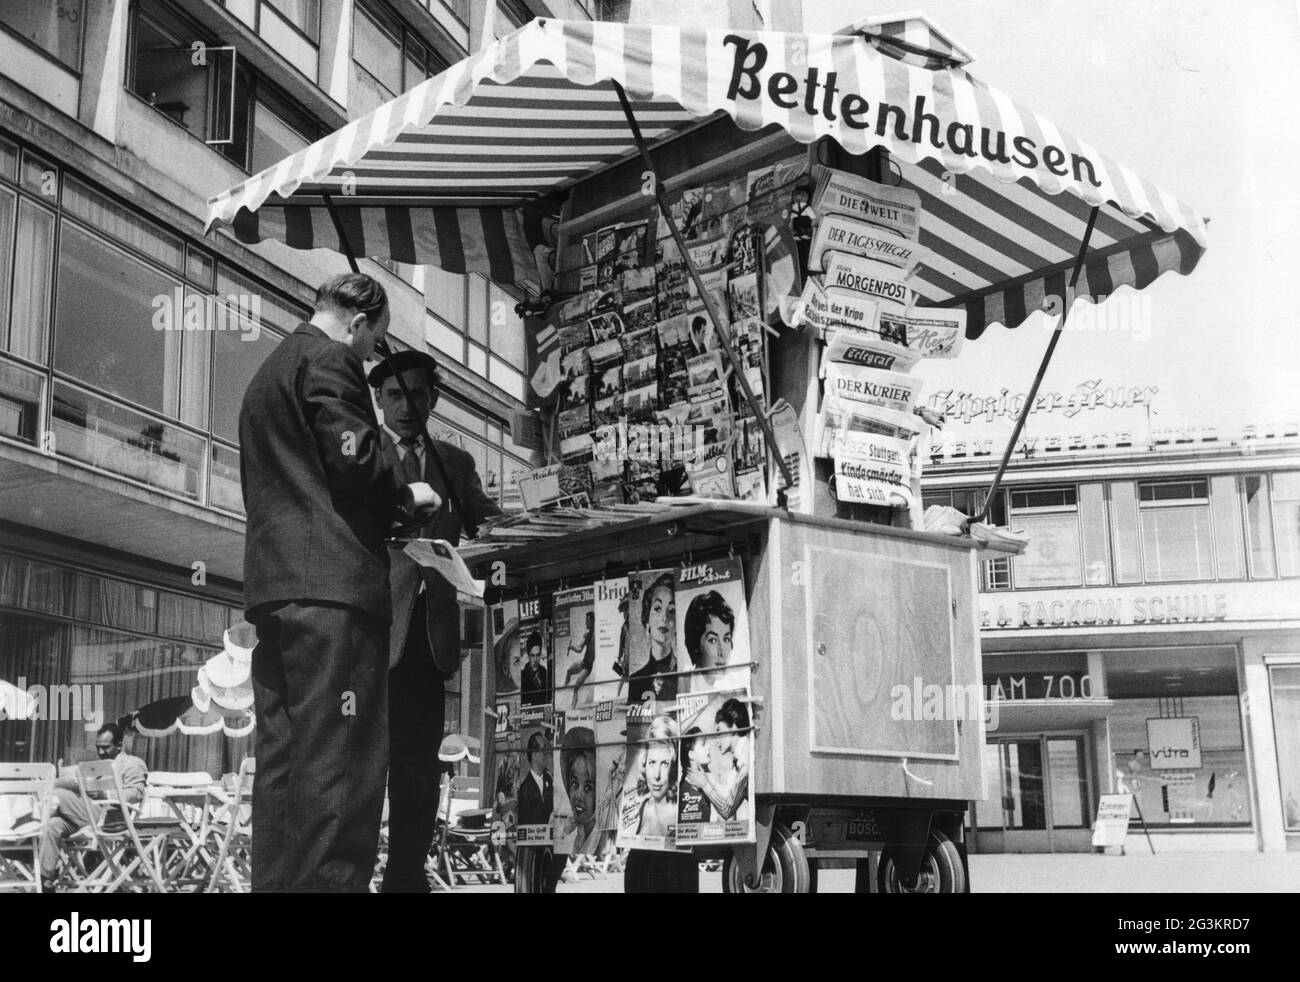 Commercio, commercianti, rivenditore di giornali, Zoo di Bahnhof, Berlino, 1960, INFORMAZIONI-AGGIUNTIVE-DI-AUTORIZZAZIONE-DIRITTI-NON-DISPONIBILI Foto Stock